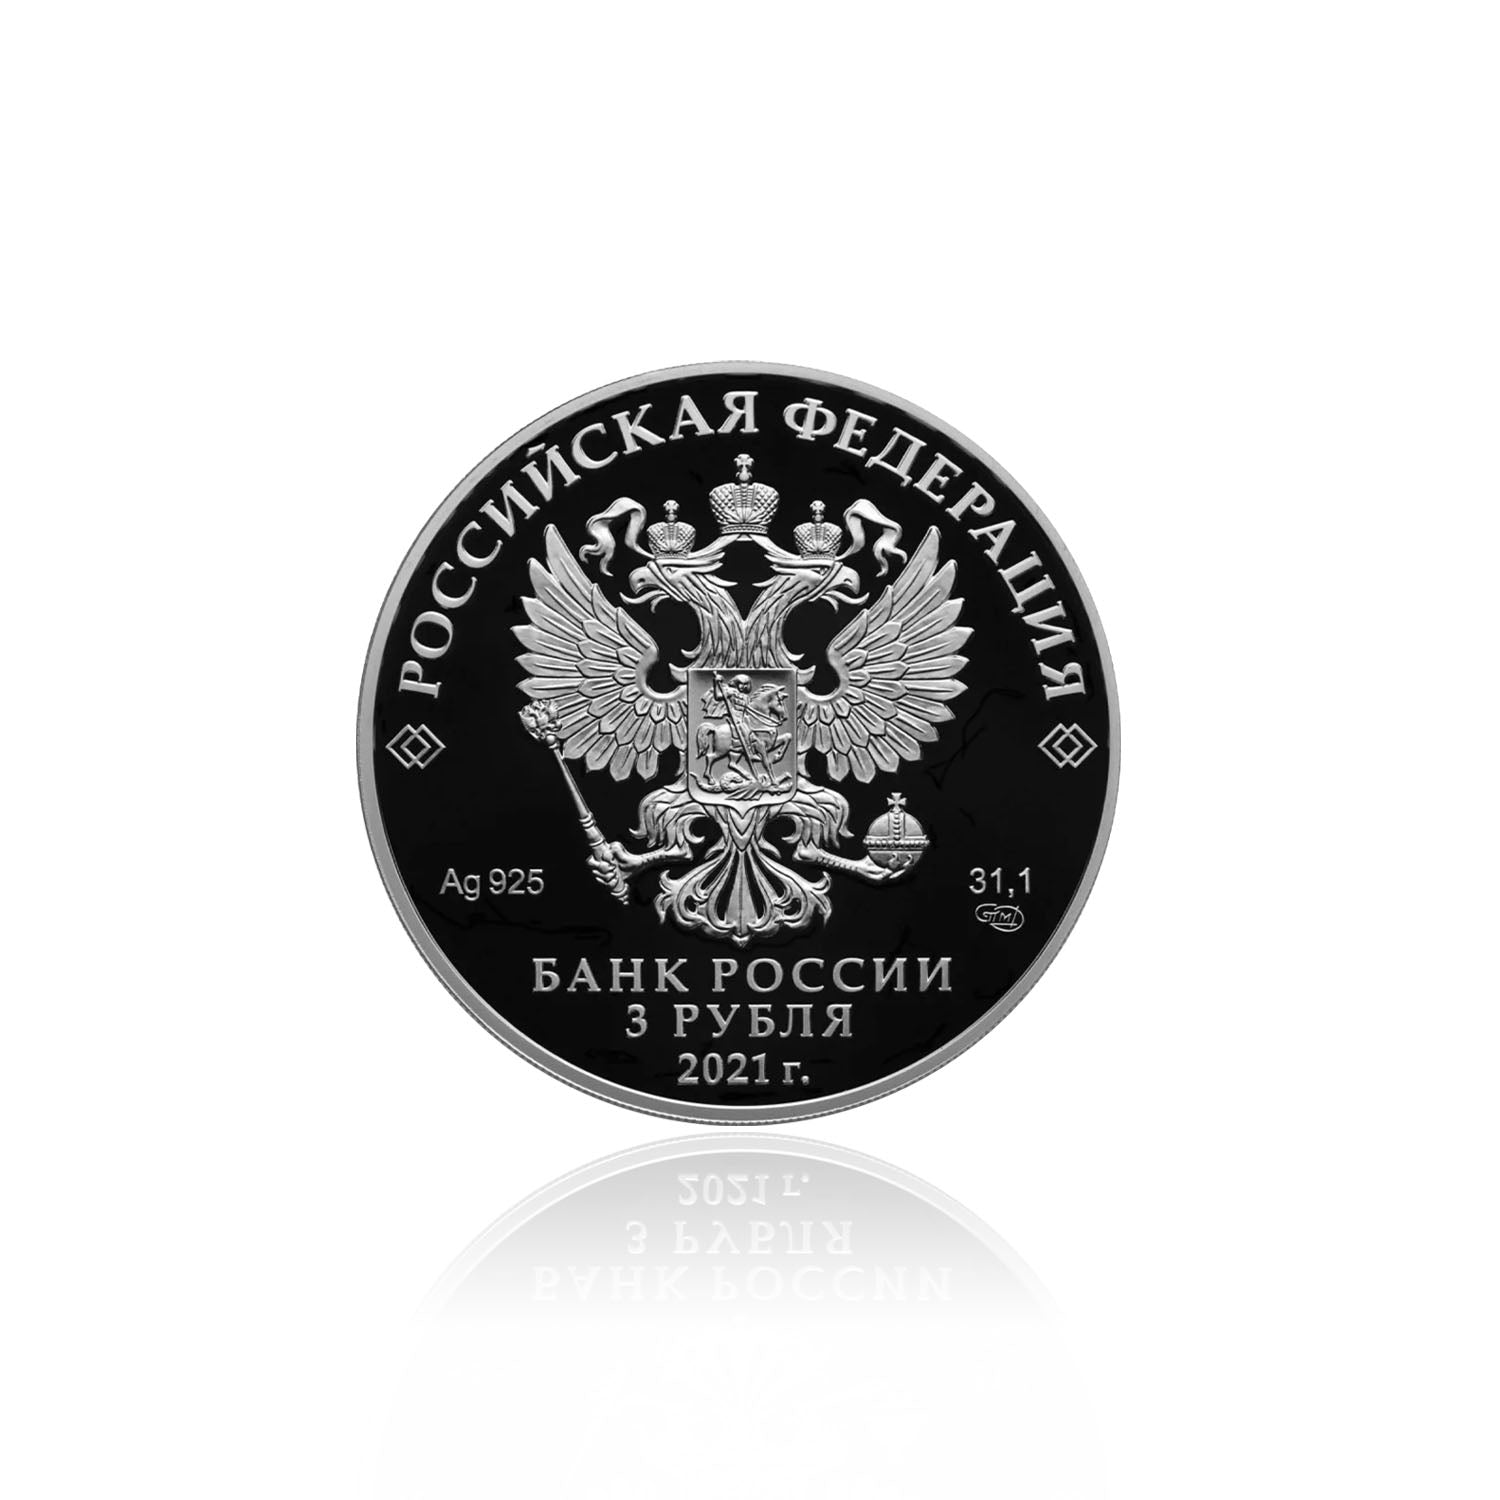 UEFA EURO 2020 Commemorative Silver Coin – Russia